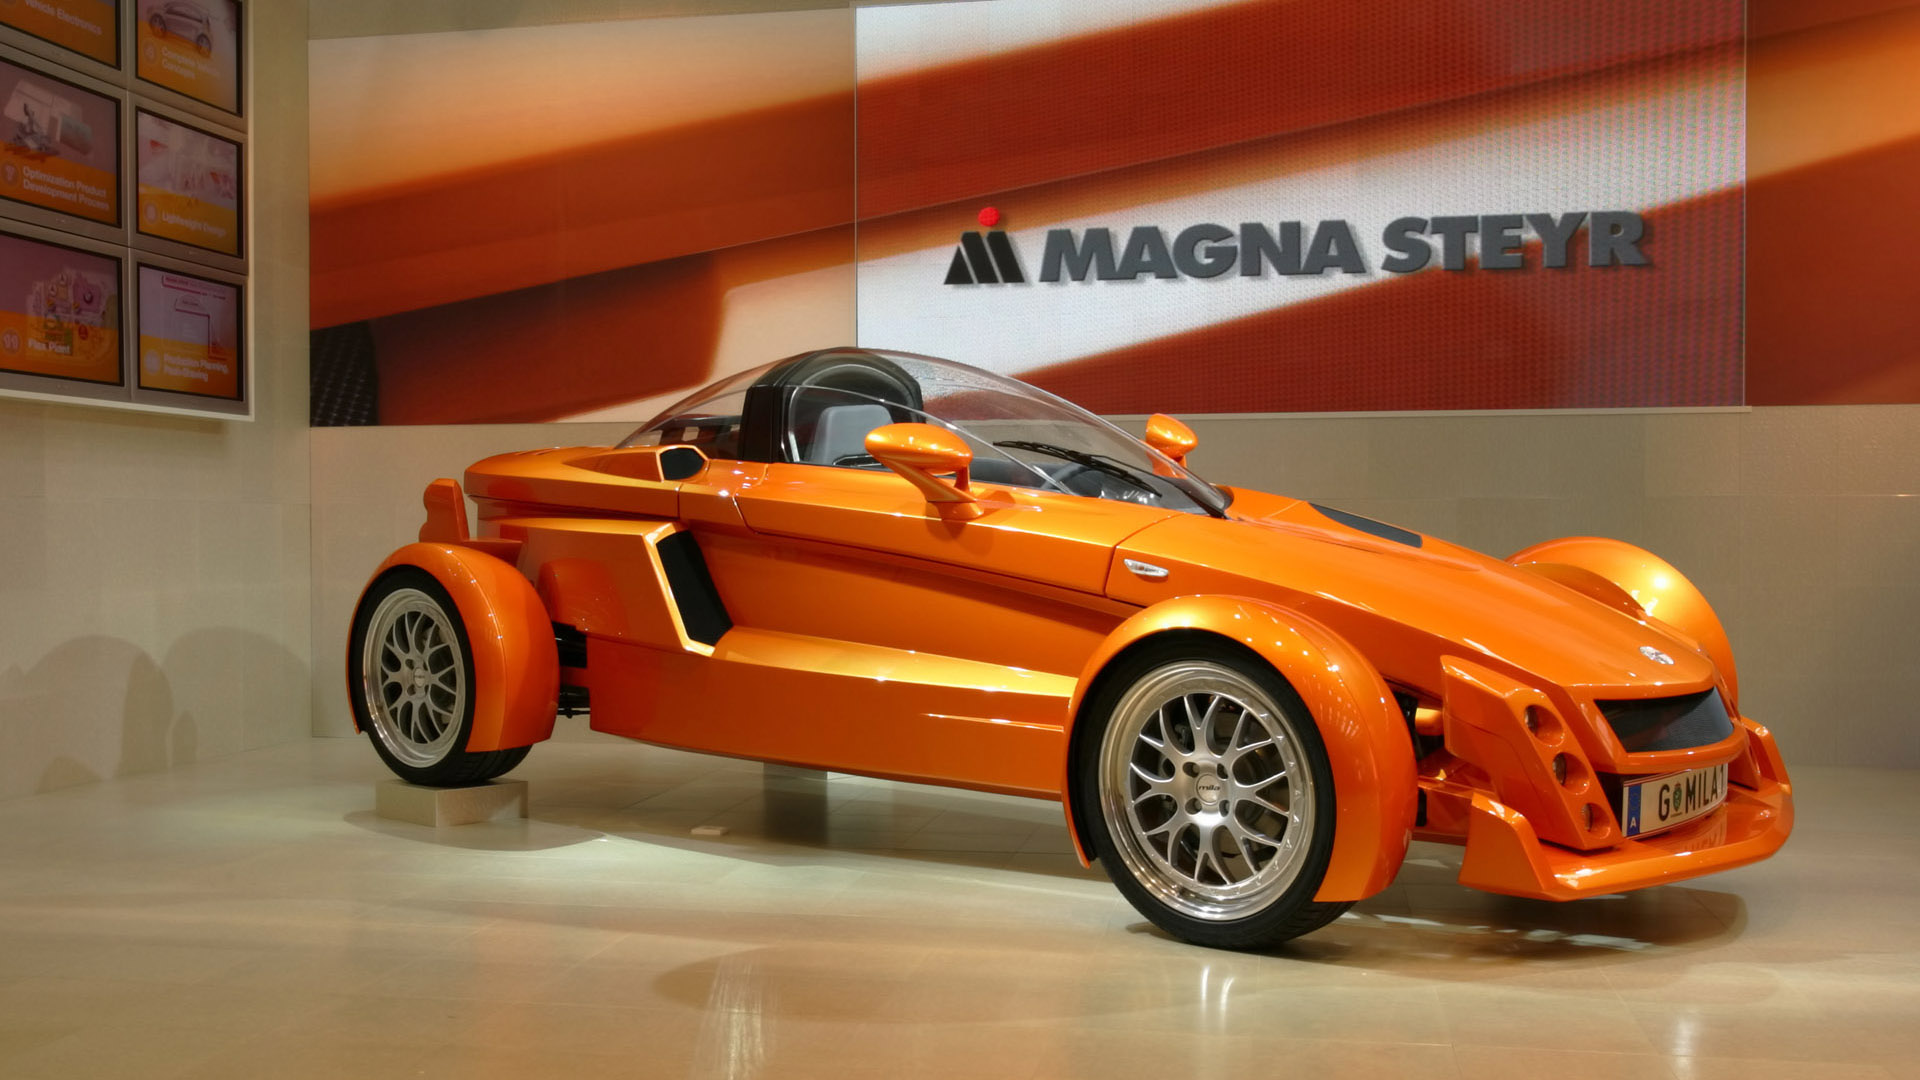 El Magna Steyr Mila Concept fue el primer prototipo de marca propia, construido para mostrar los desarrollos propios de Magna Steyr y la capacidad de construir concept cars para todas las marcas